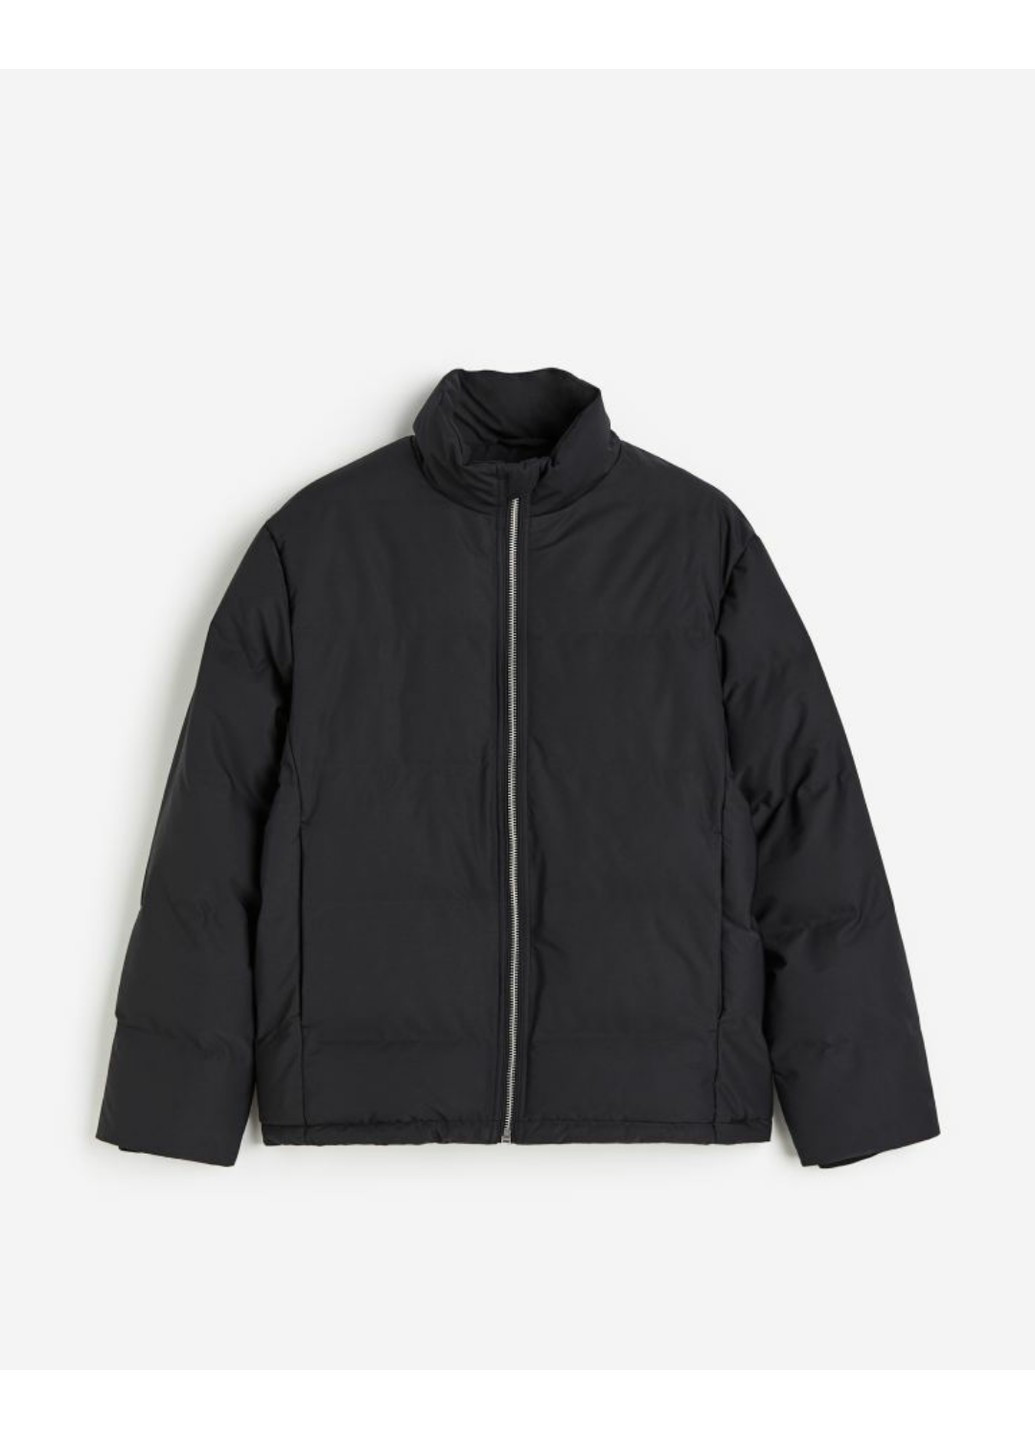 Чорна демісезонна чоловіча куртка regular fit (56221) s чорна H&M